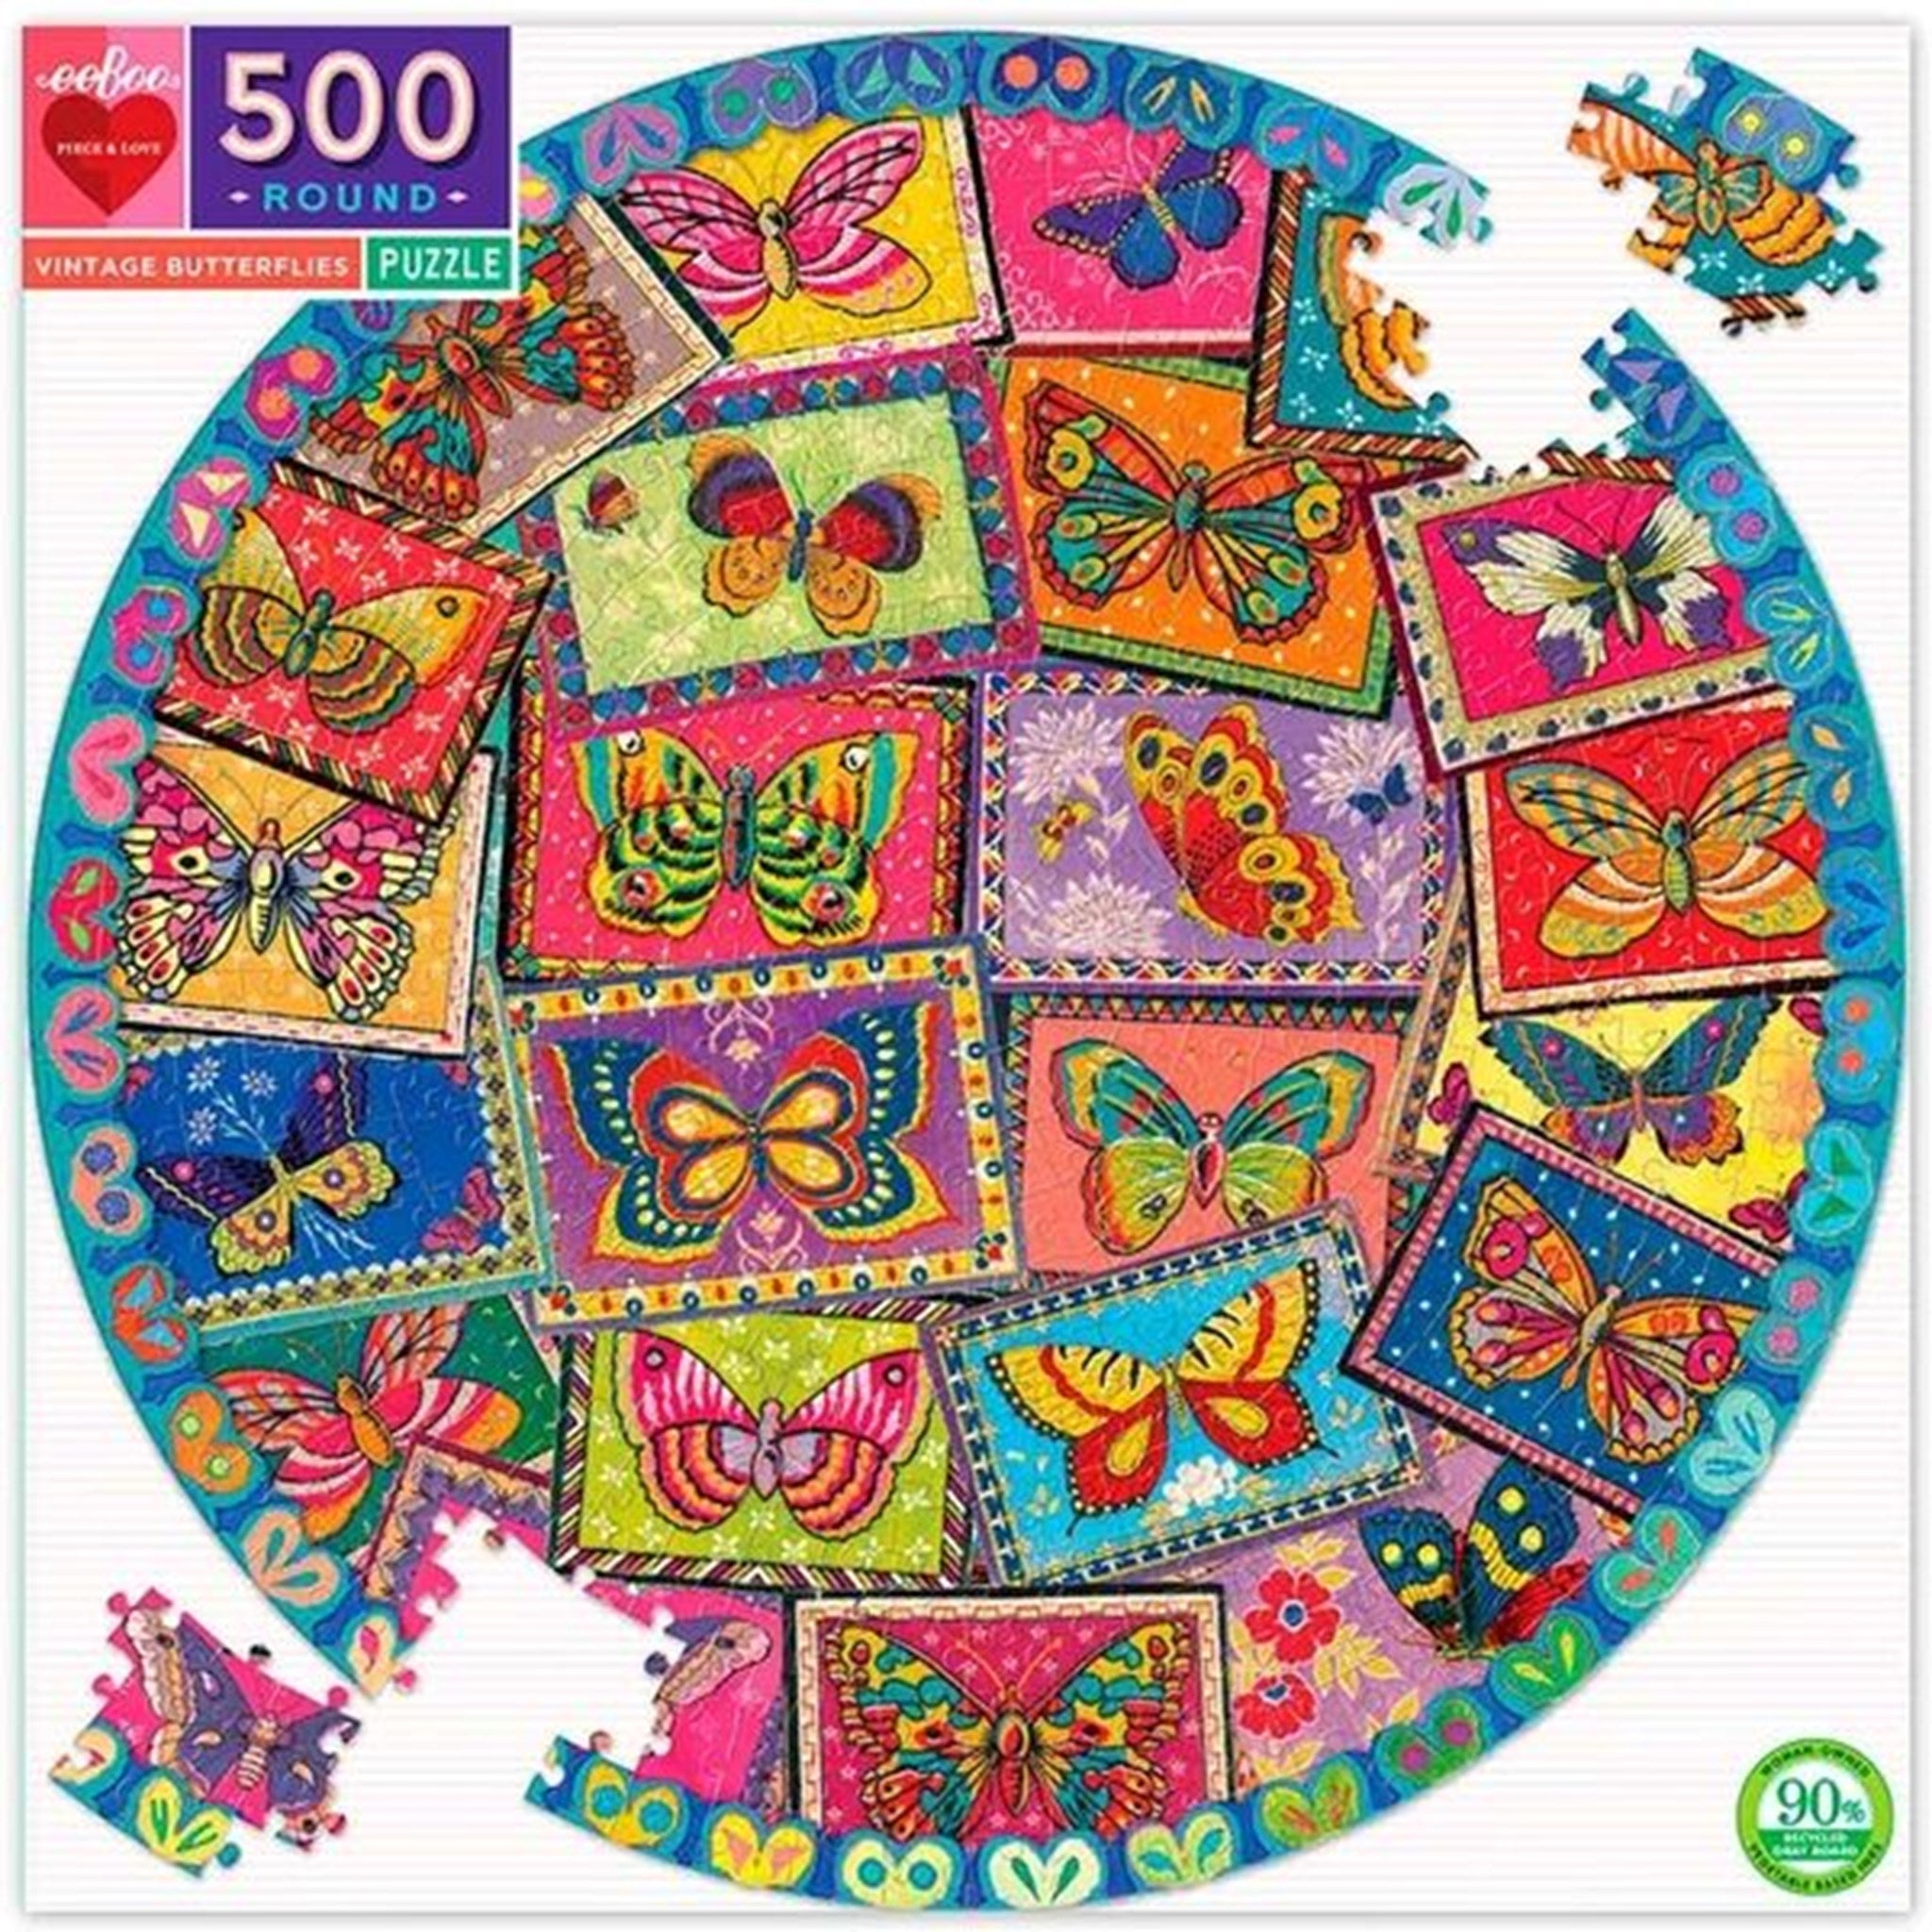 Eeboo Puzzle 500 Pieces - Vintage Butterflies